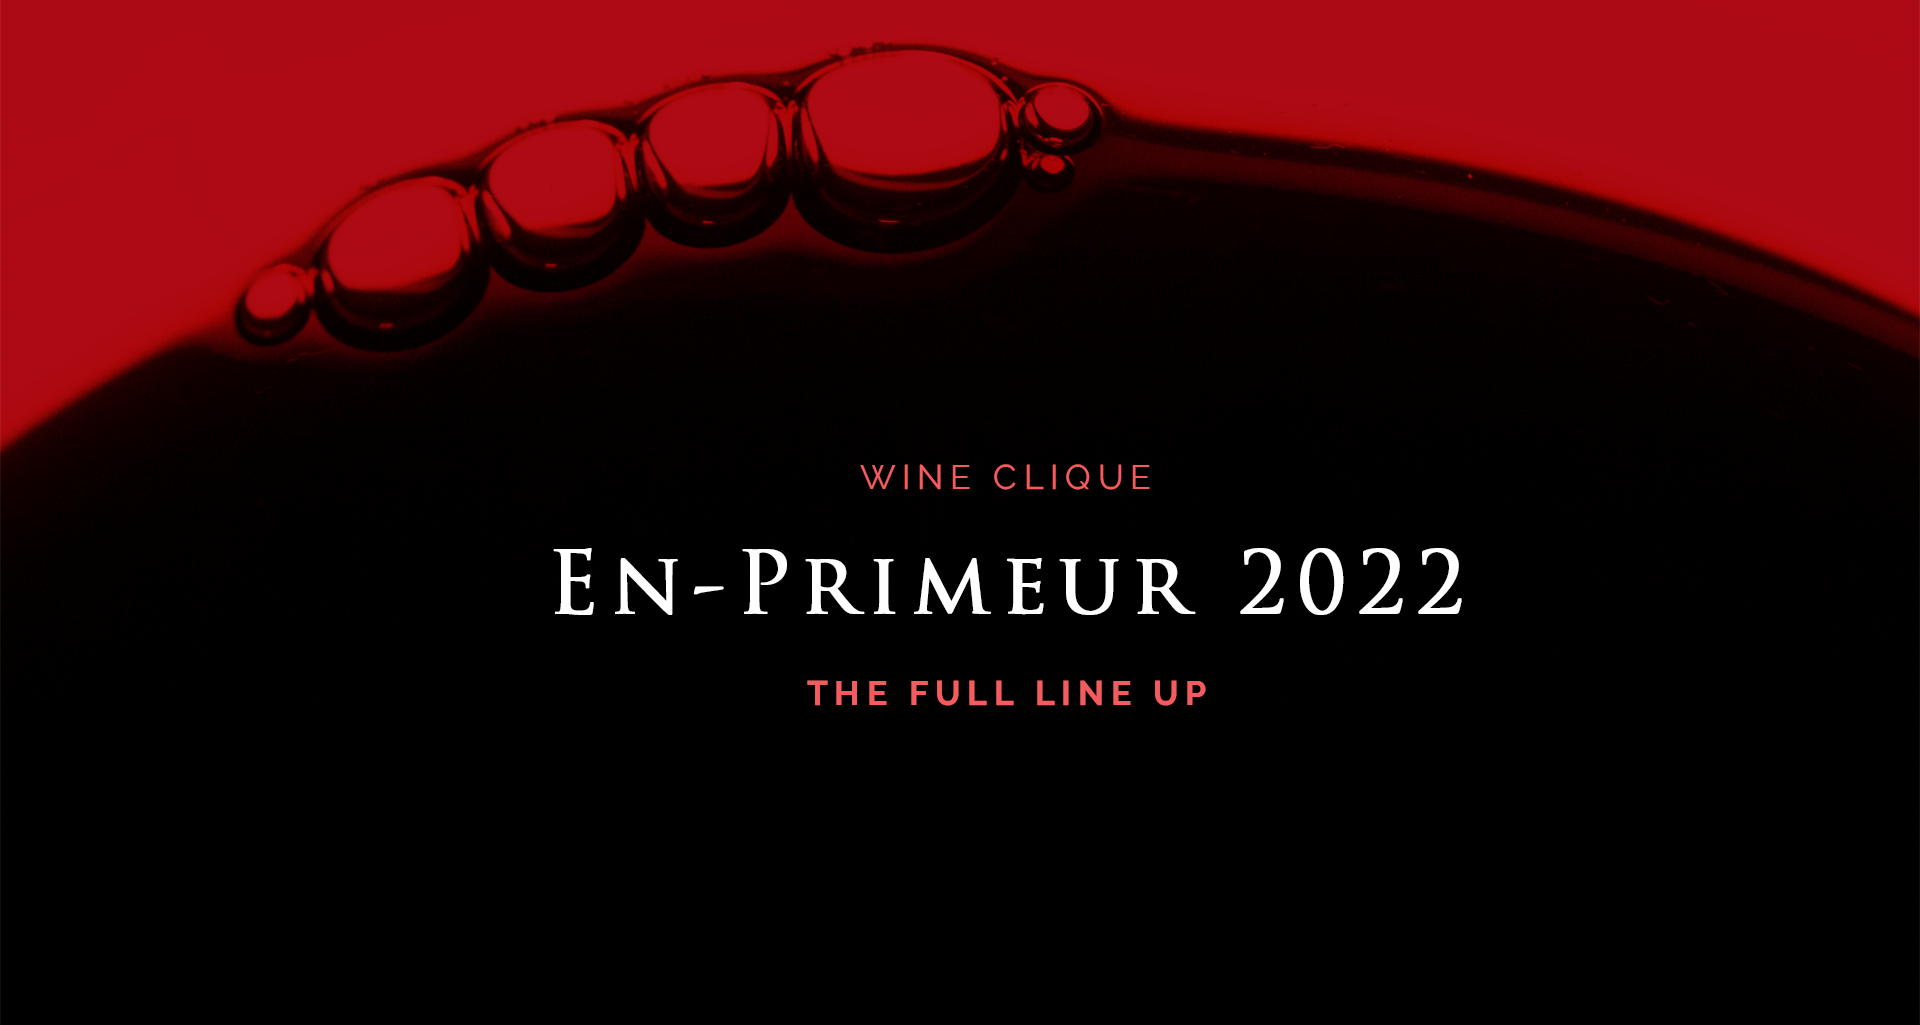 En-Primeur 2022 Summary